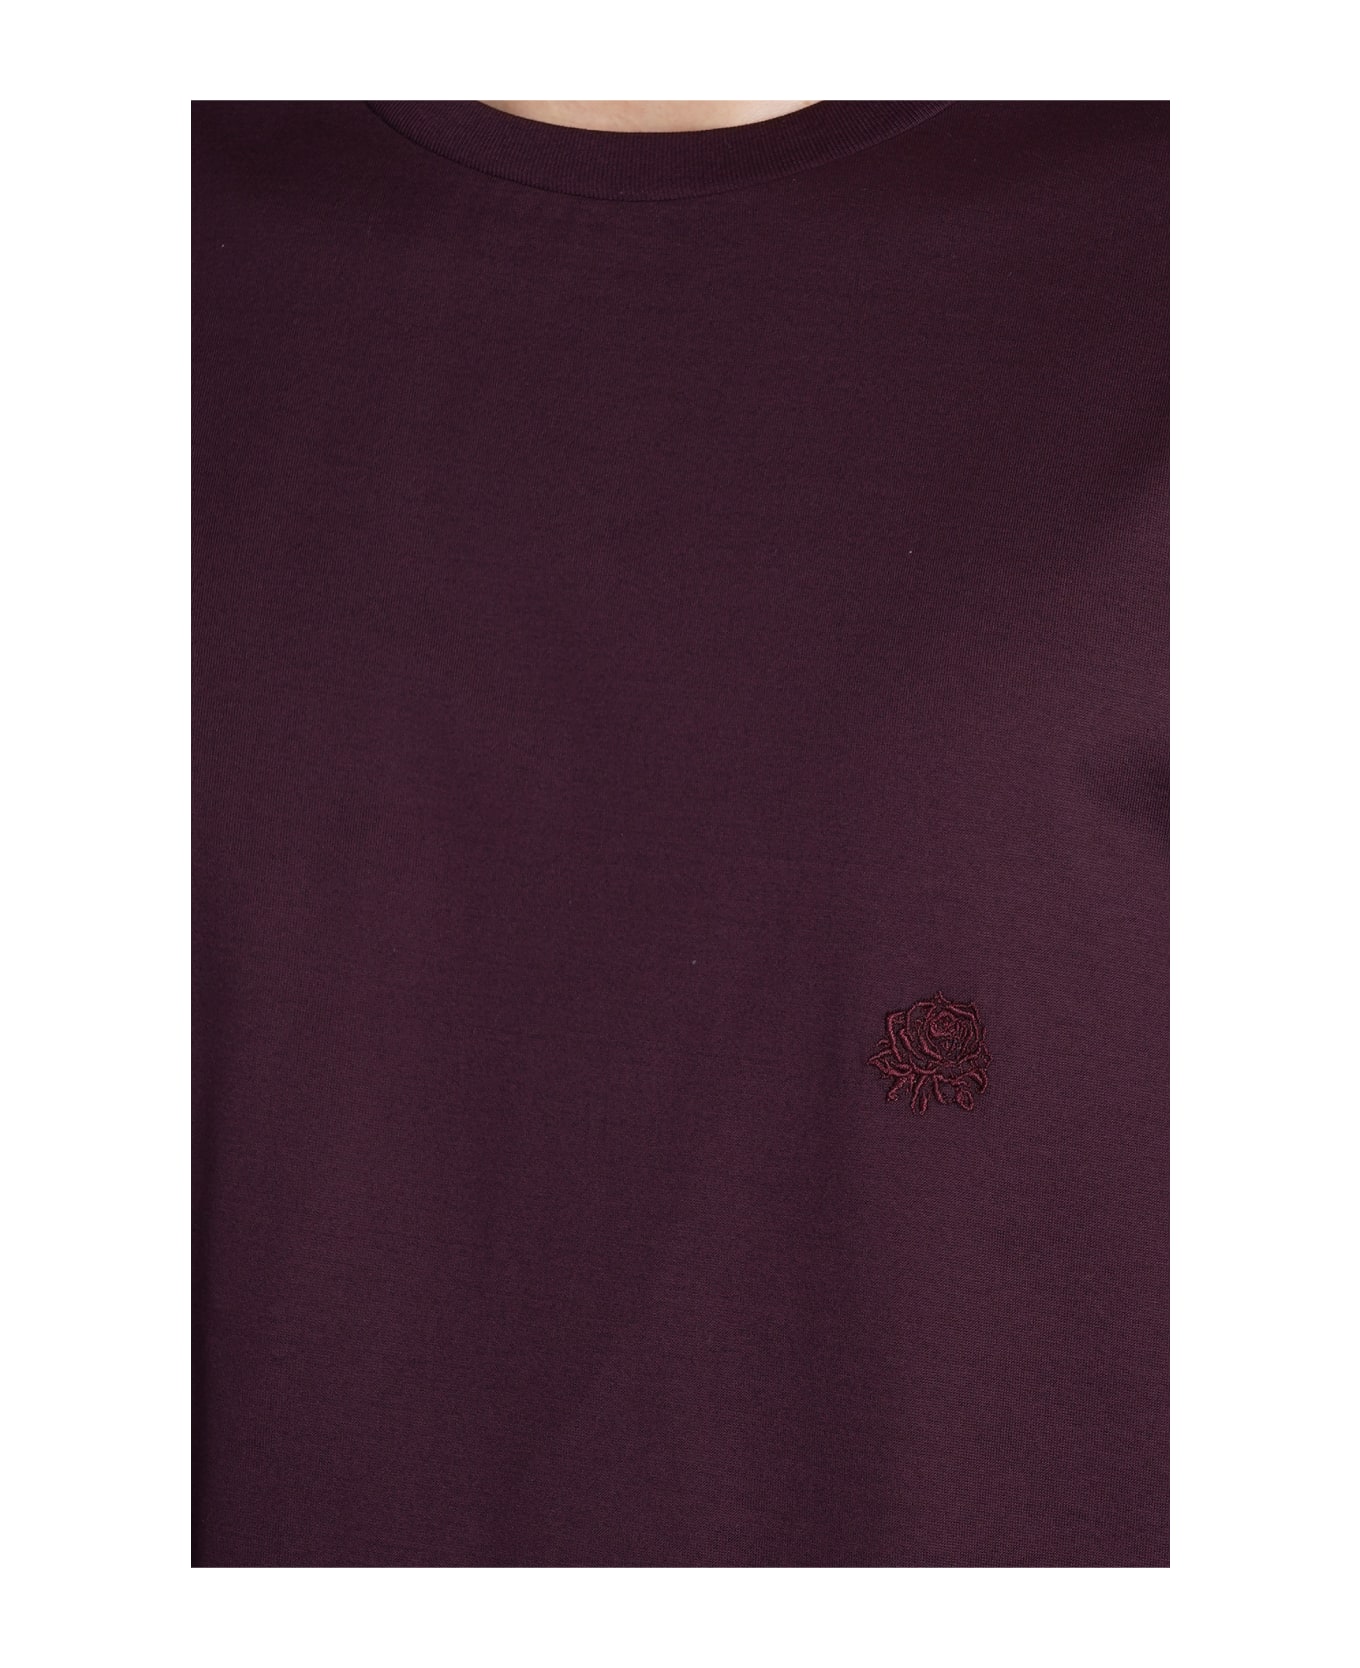 Low Brand B150 Rose T-shirt In Bordeaux Cotton - bordeaux シャツ